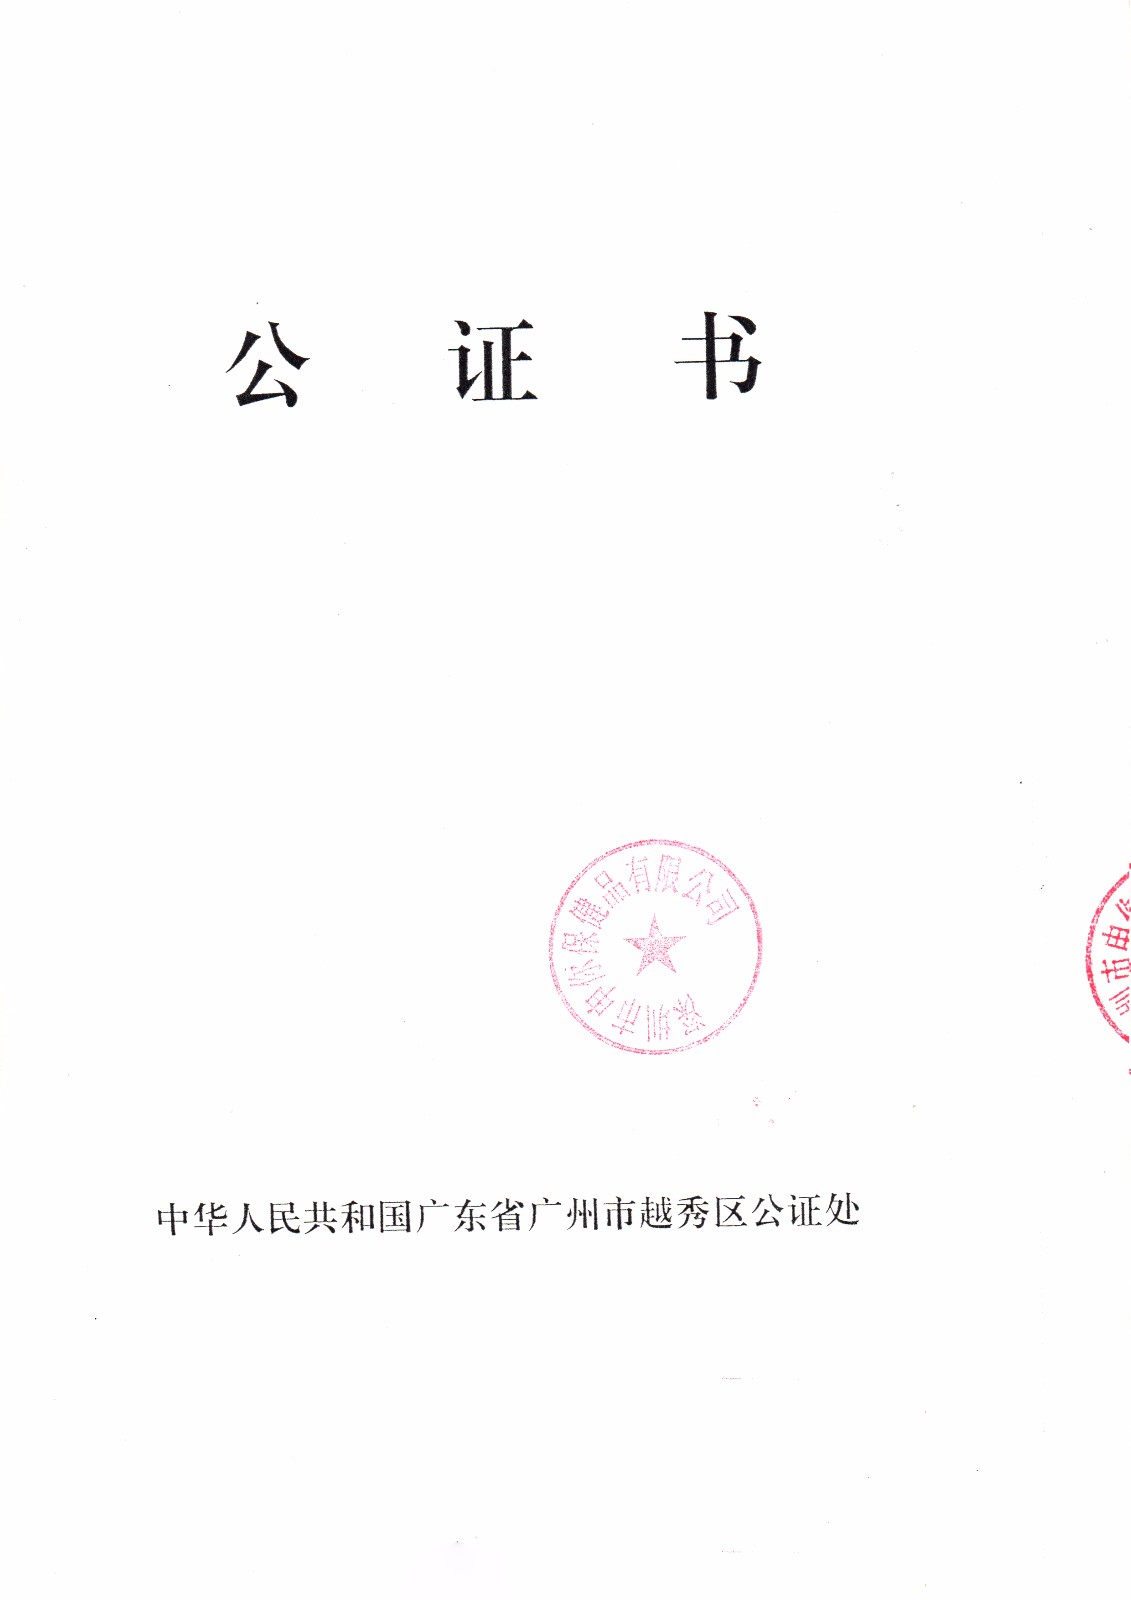 广州市越秀区公证处公证处公证书840px.jpg